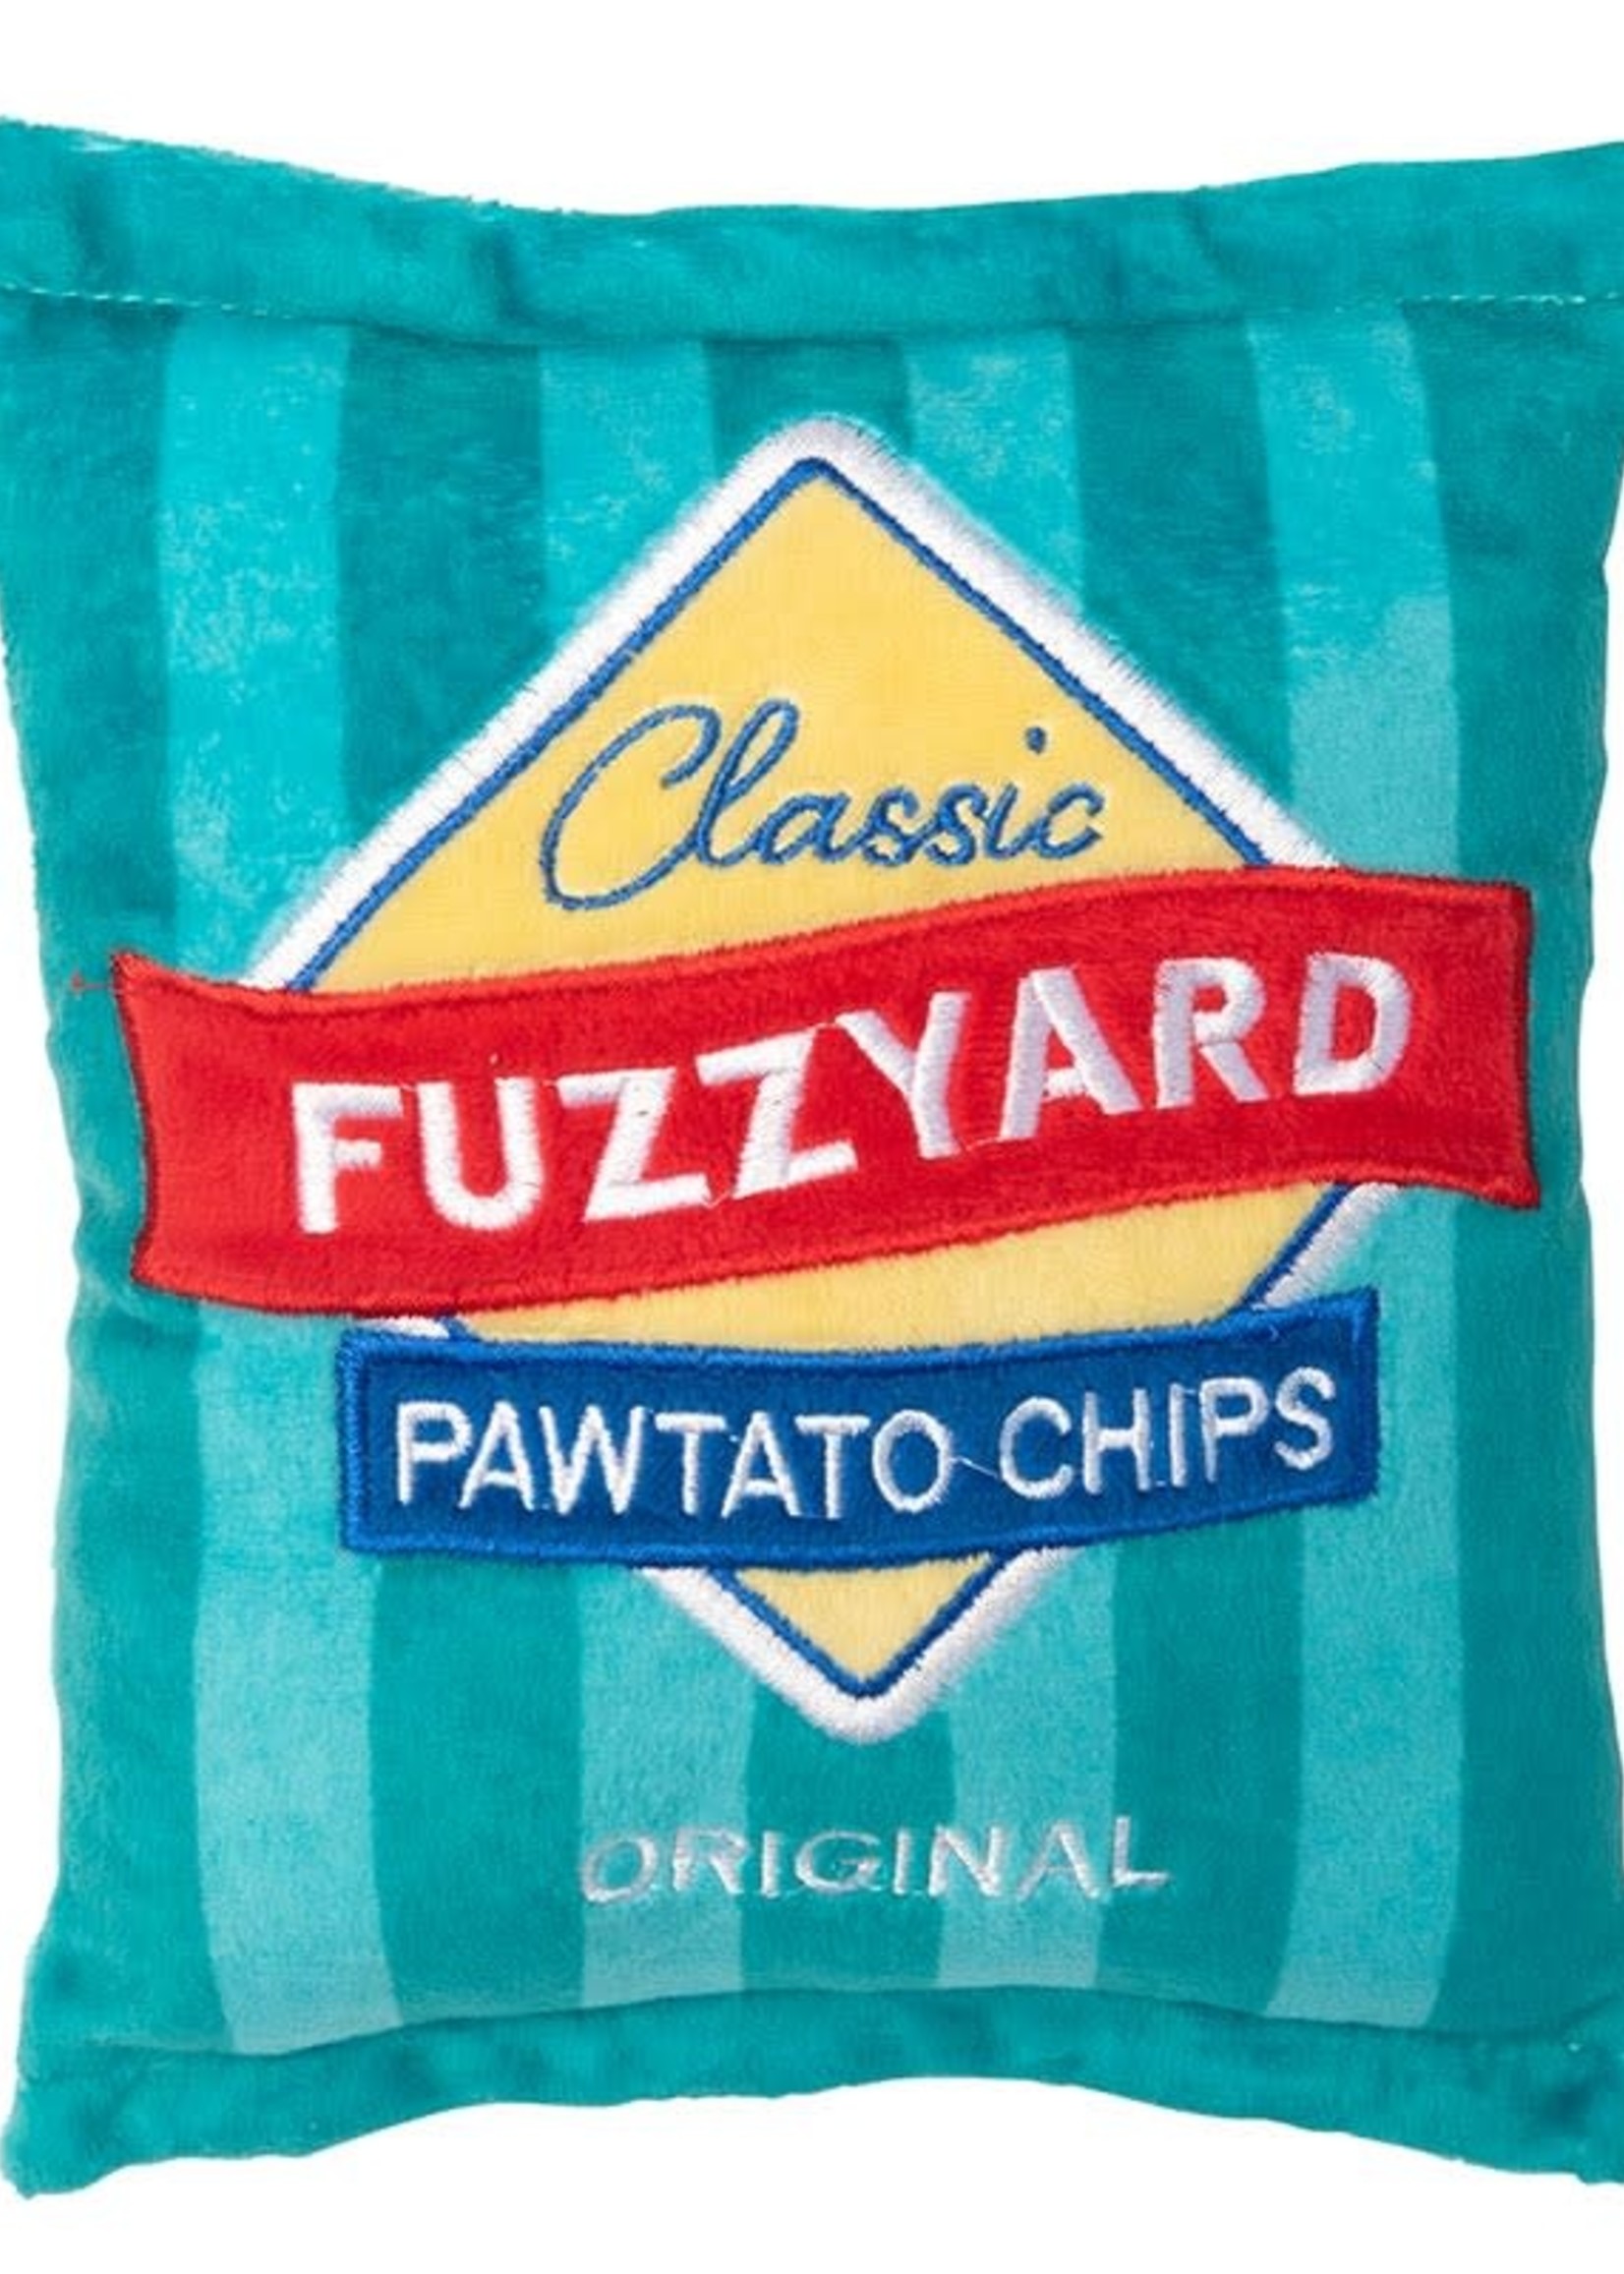 FuzzYard Fuzzyard pawtato chips